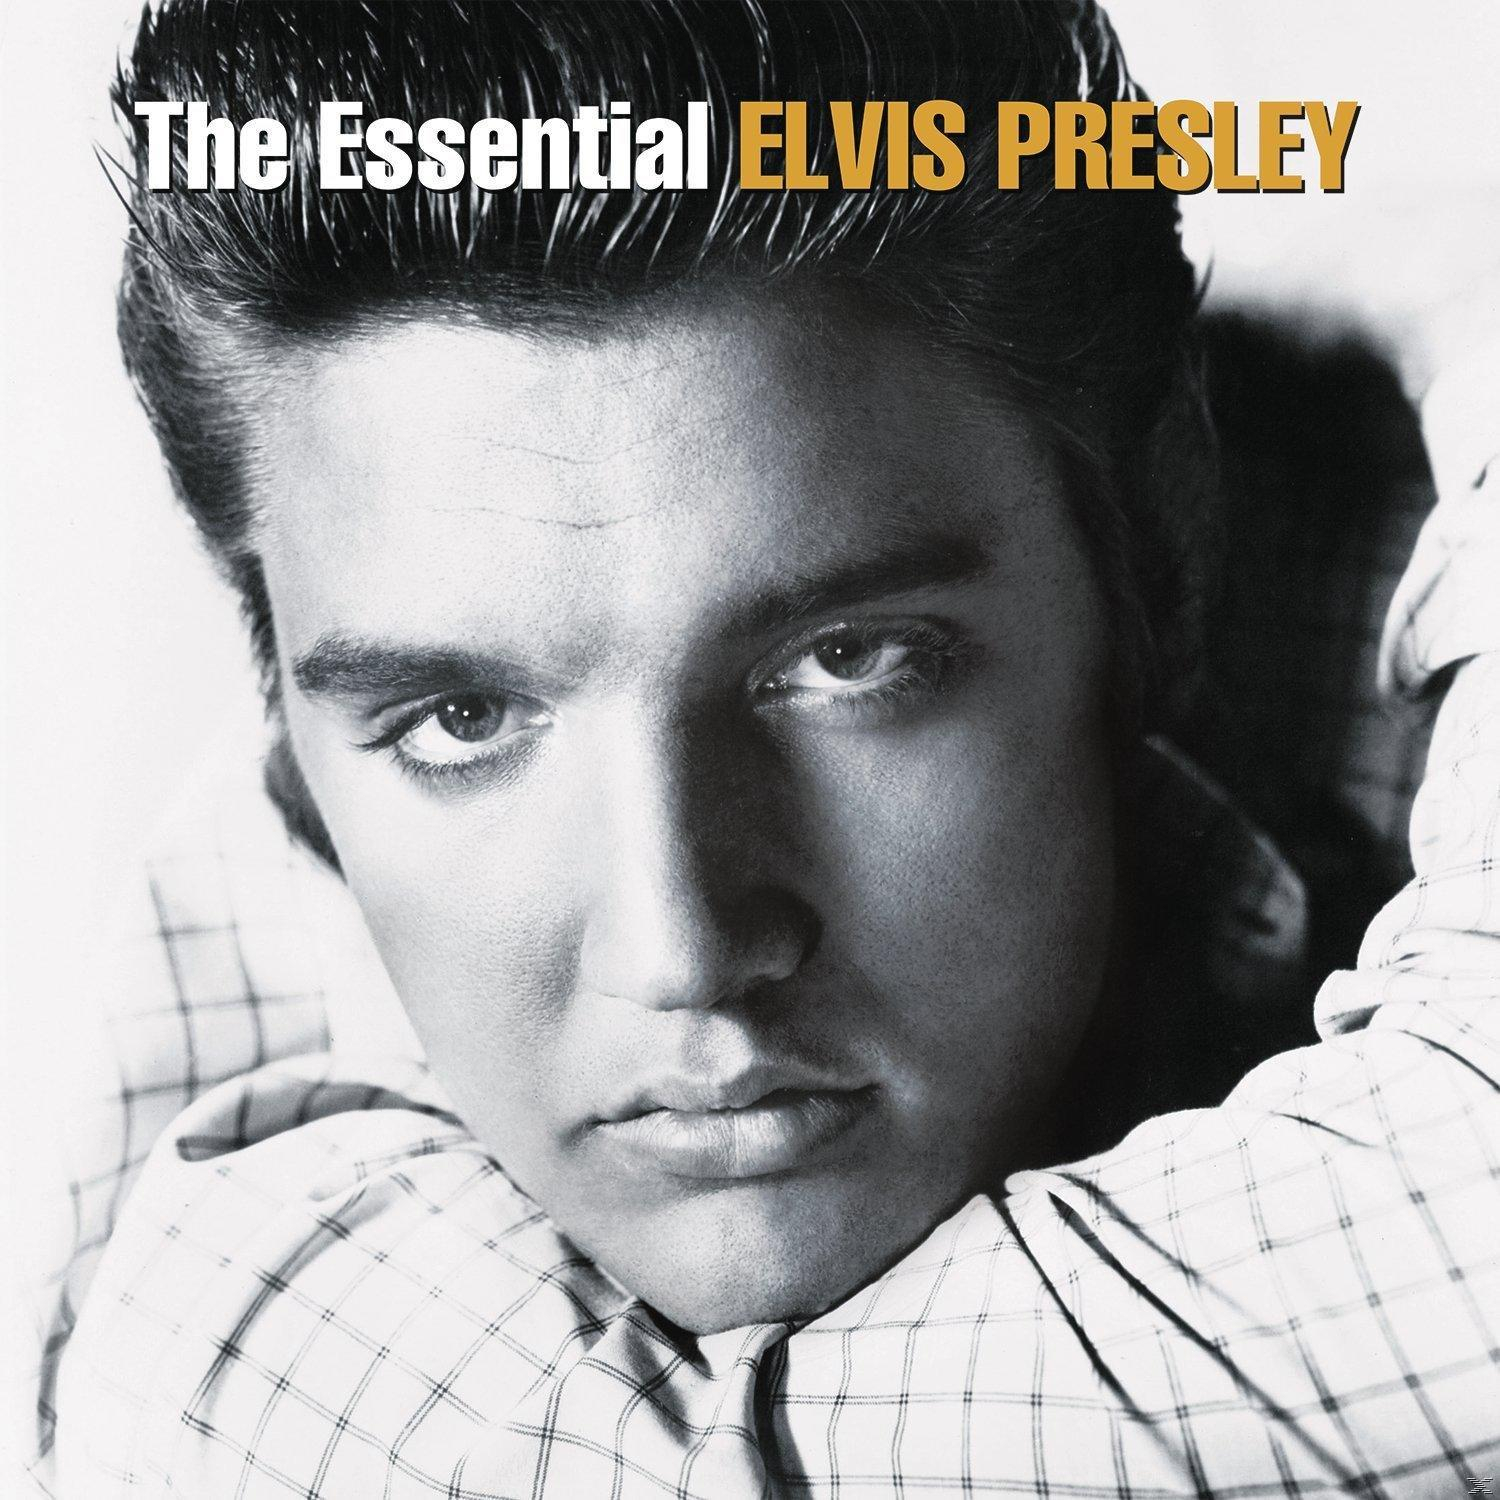 Essential - Elvis Presley (Vinyl) The Elvis Presley -